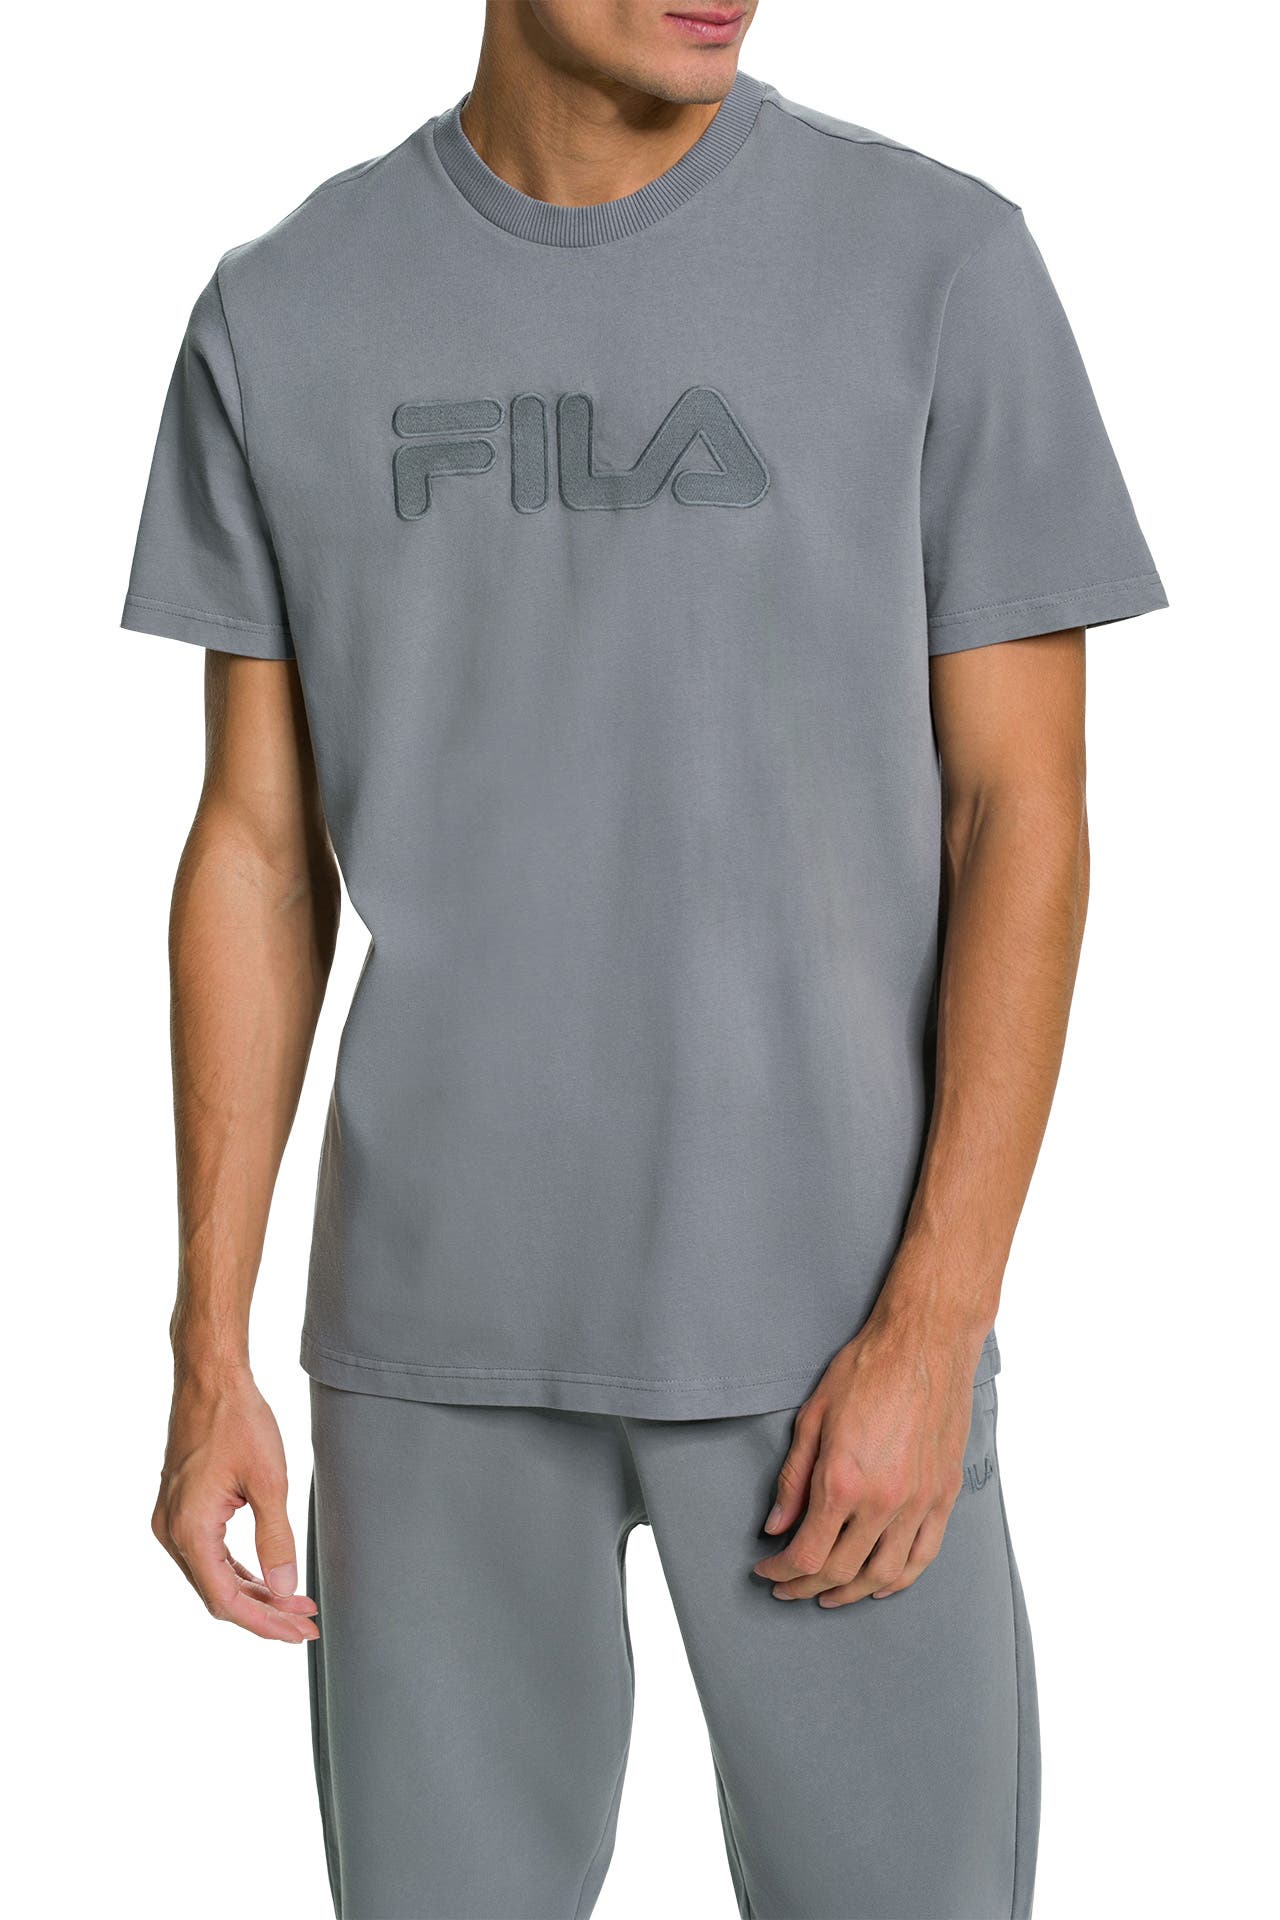 T-Shirt - FILA » günstig online kaufen | OUTLETCITY.COM